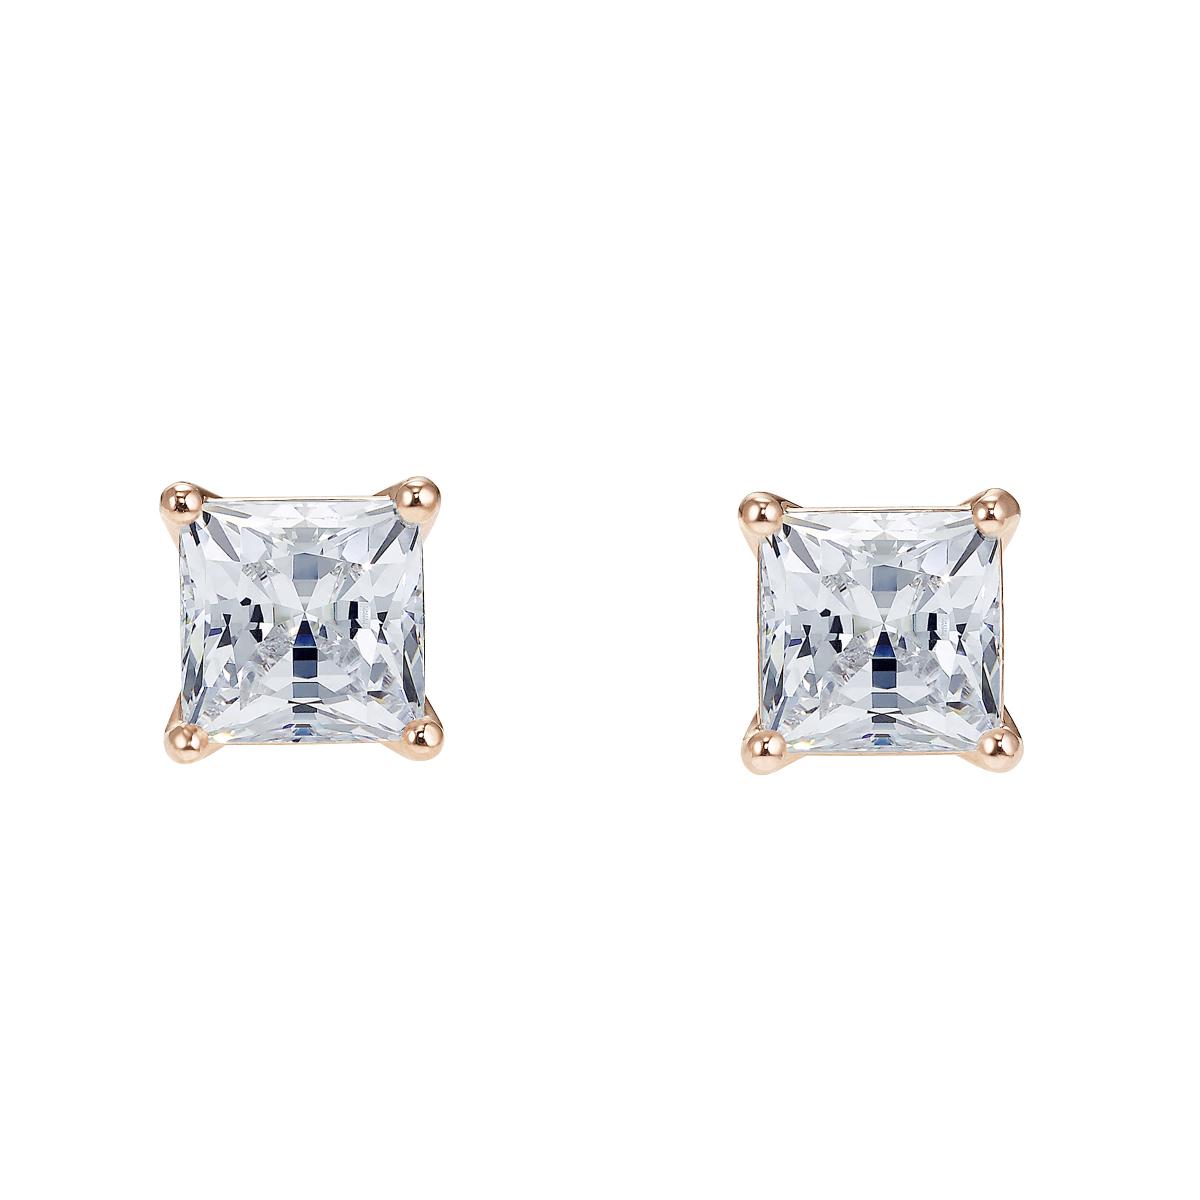 Boucles d'oreilles Swarovski 5509935 - Clous Métal Pierres en cristal étincelants carrées Femme